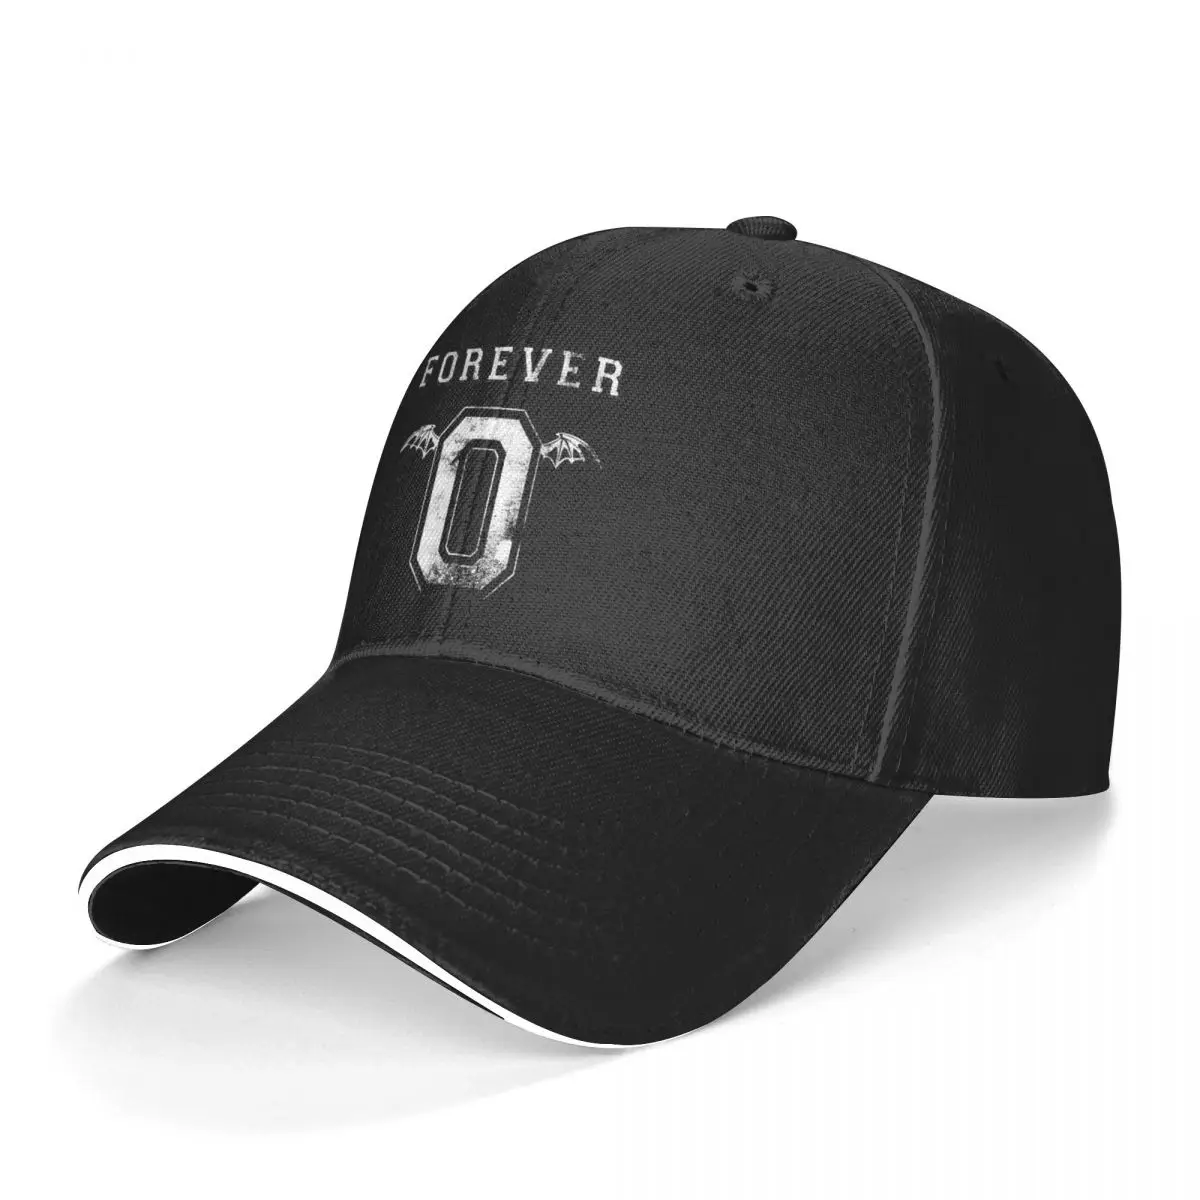 Avenged Sevenfold Baseball Cap The Rev Forever Fishing Trucker Hat Casual Men Women Stylish Print Baseball Caps